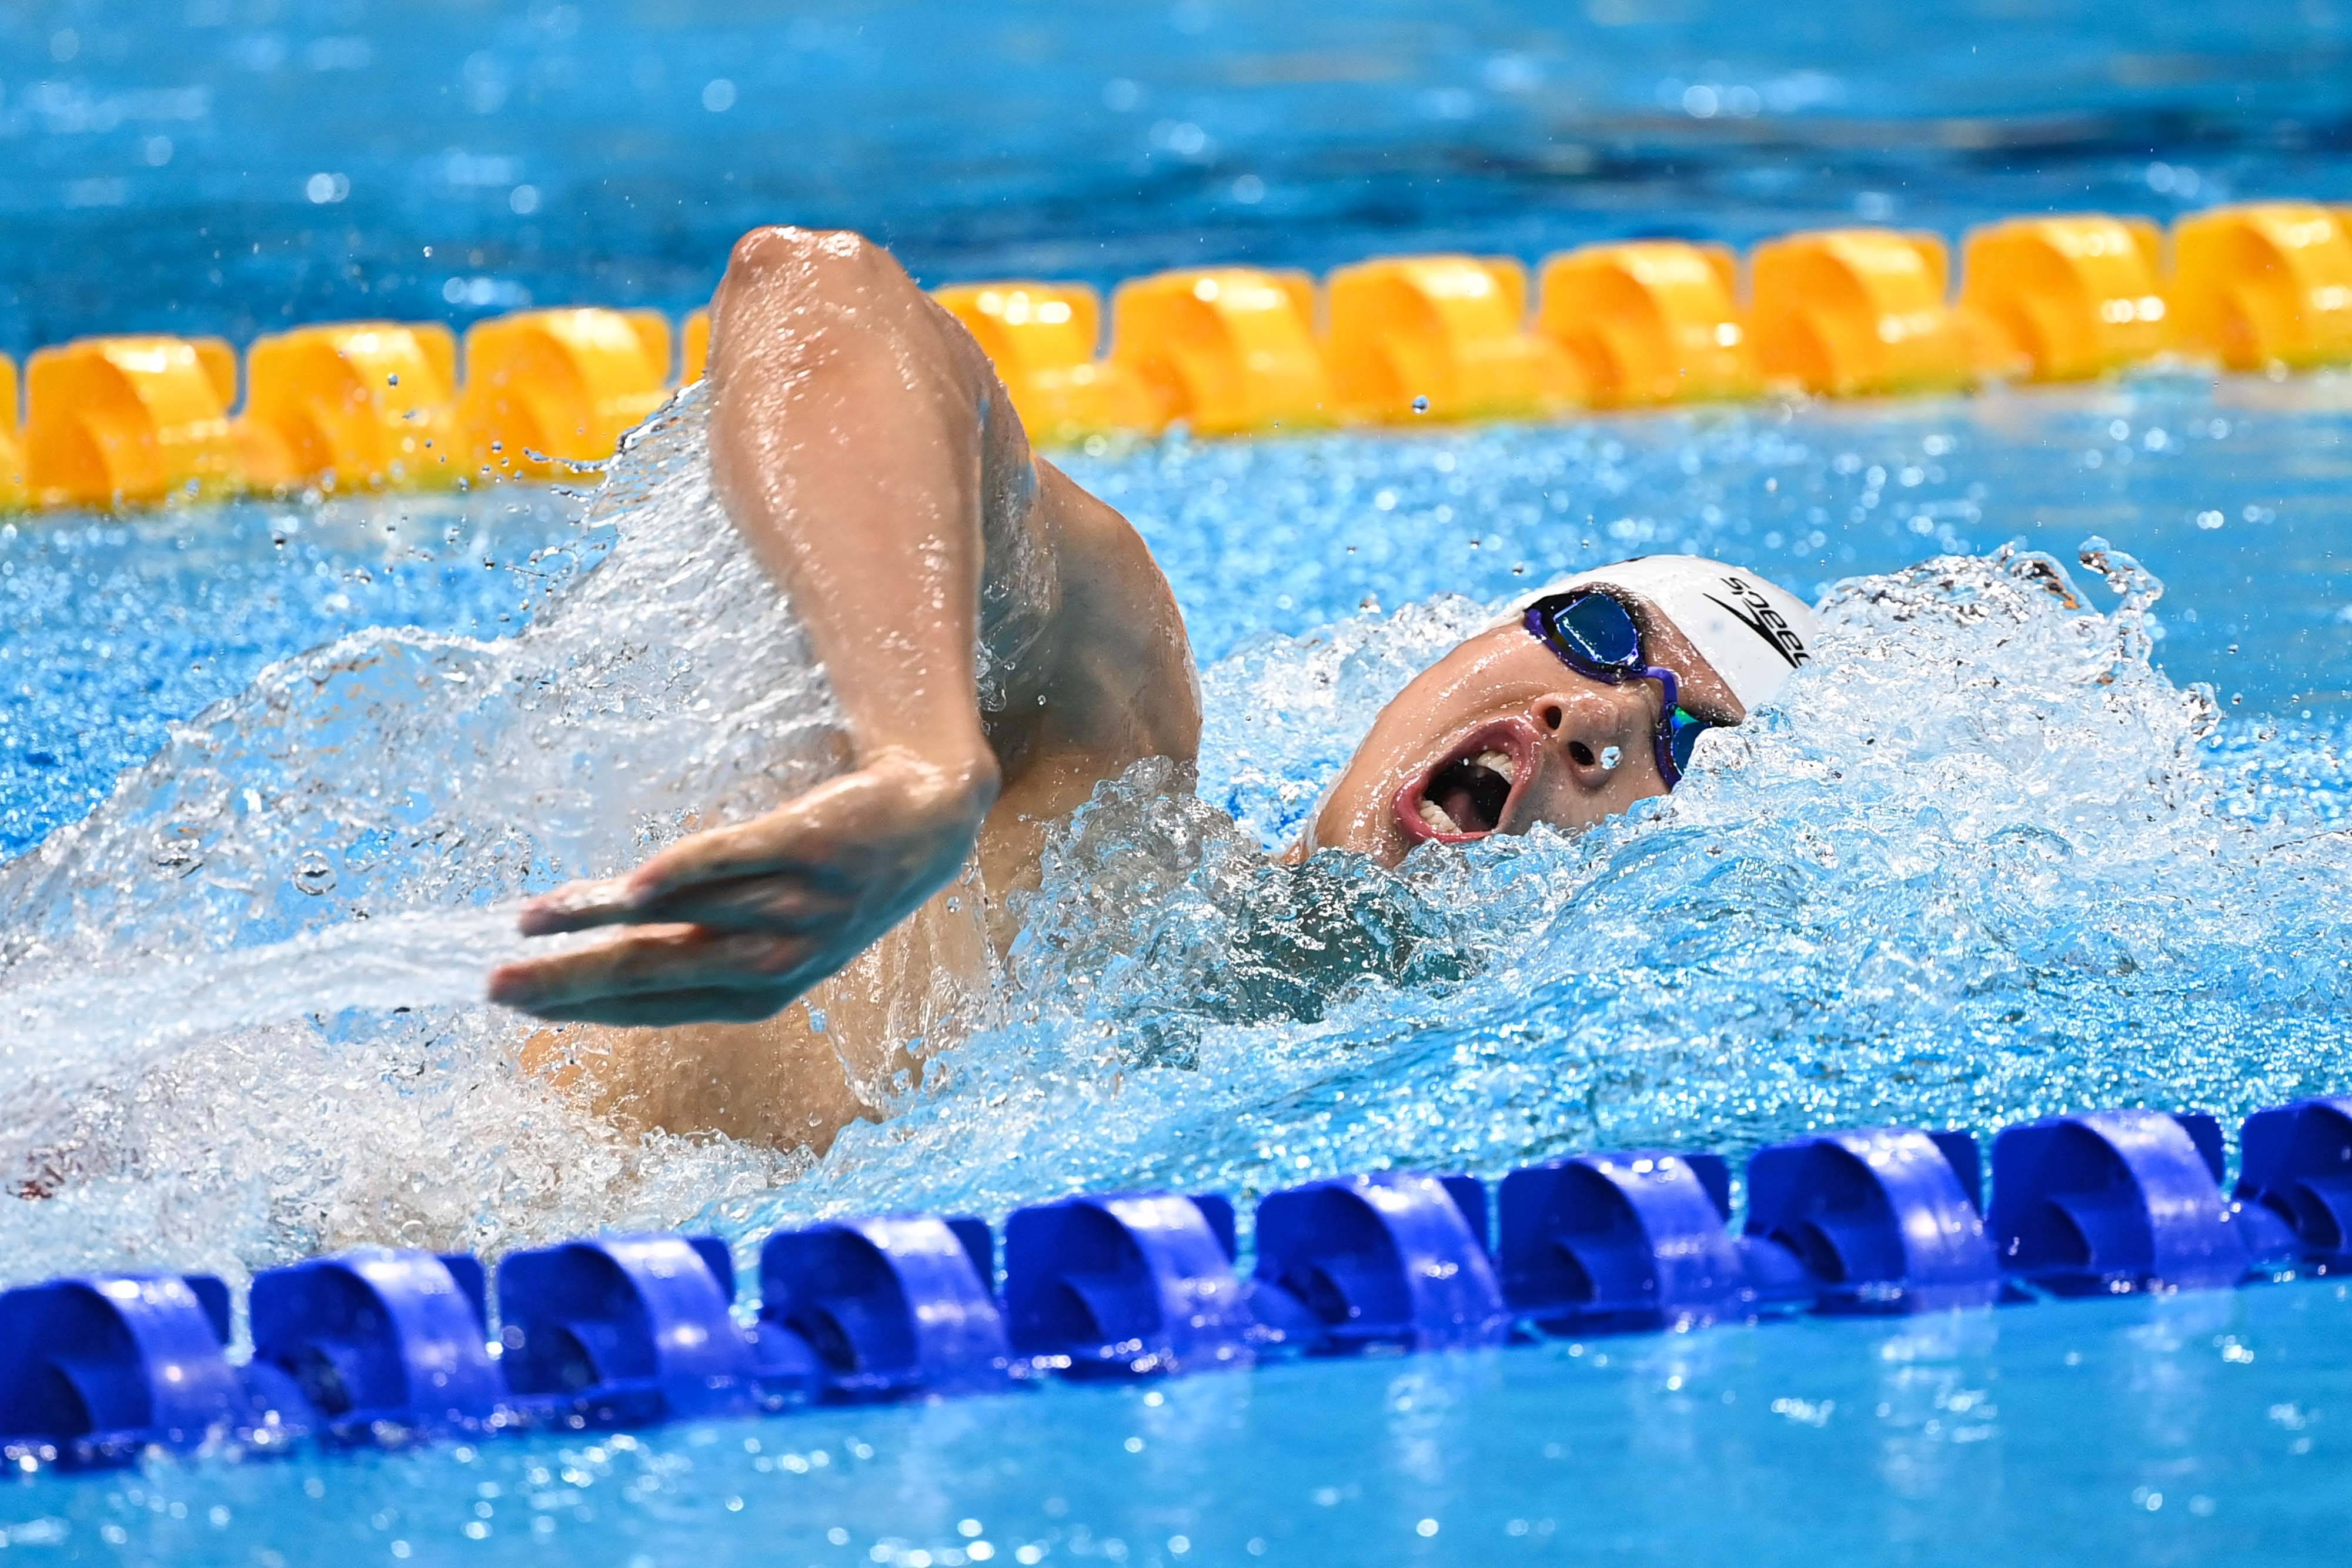 当日,在东京奥运会游泳比赛男子200米个人混合泳半决赛中,中国选手